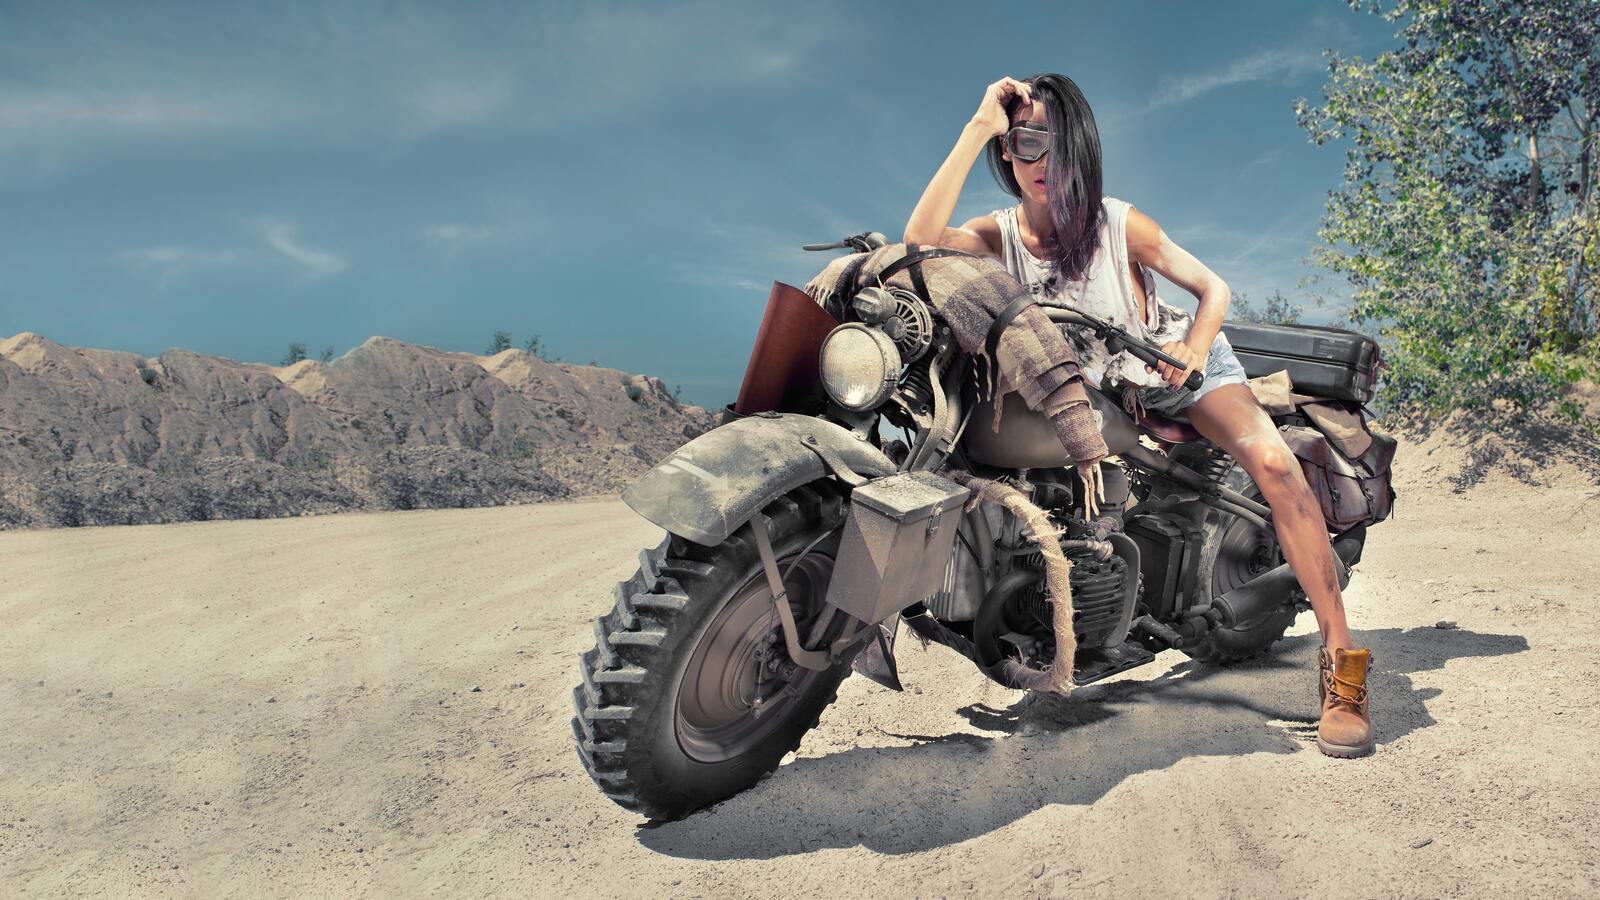 Бесплатное фото Девушка позирует в пустыне на старинном мотоцикле